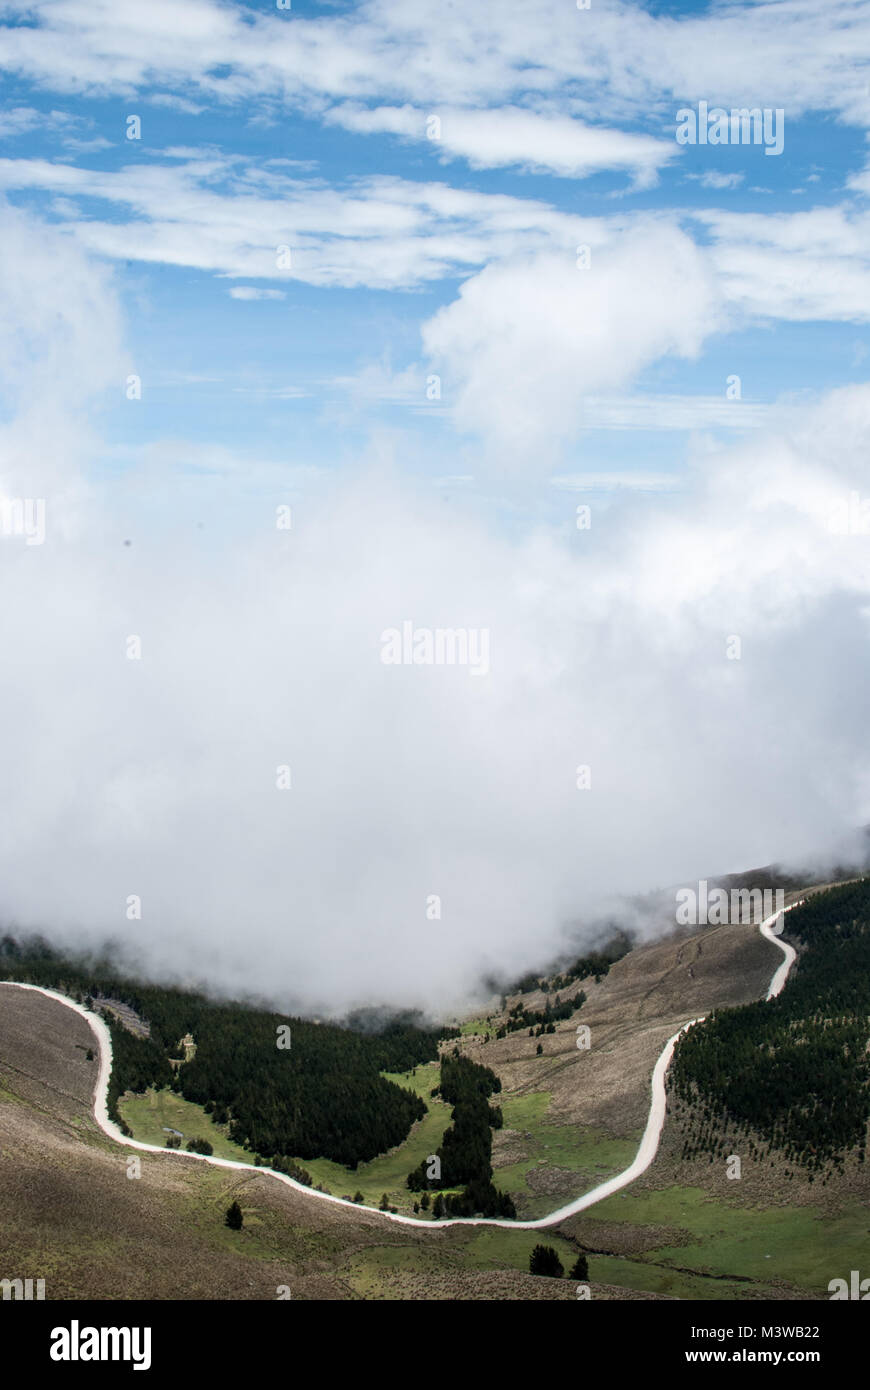 Un sinuoso camino de montaña envuelta en la niebla cerca de Guaranda, Ecuador Foto de stock